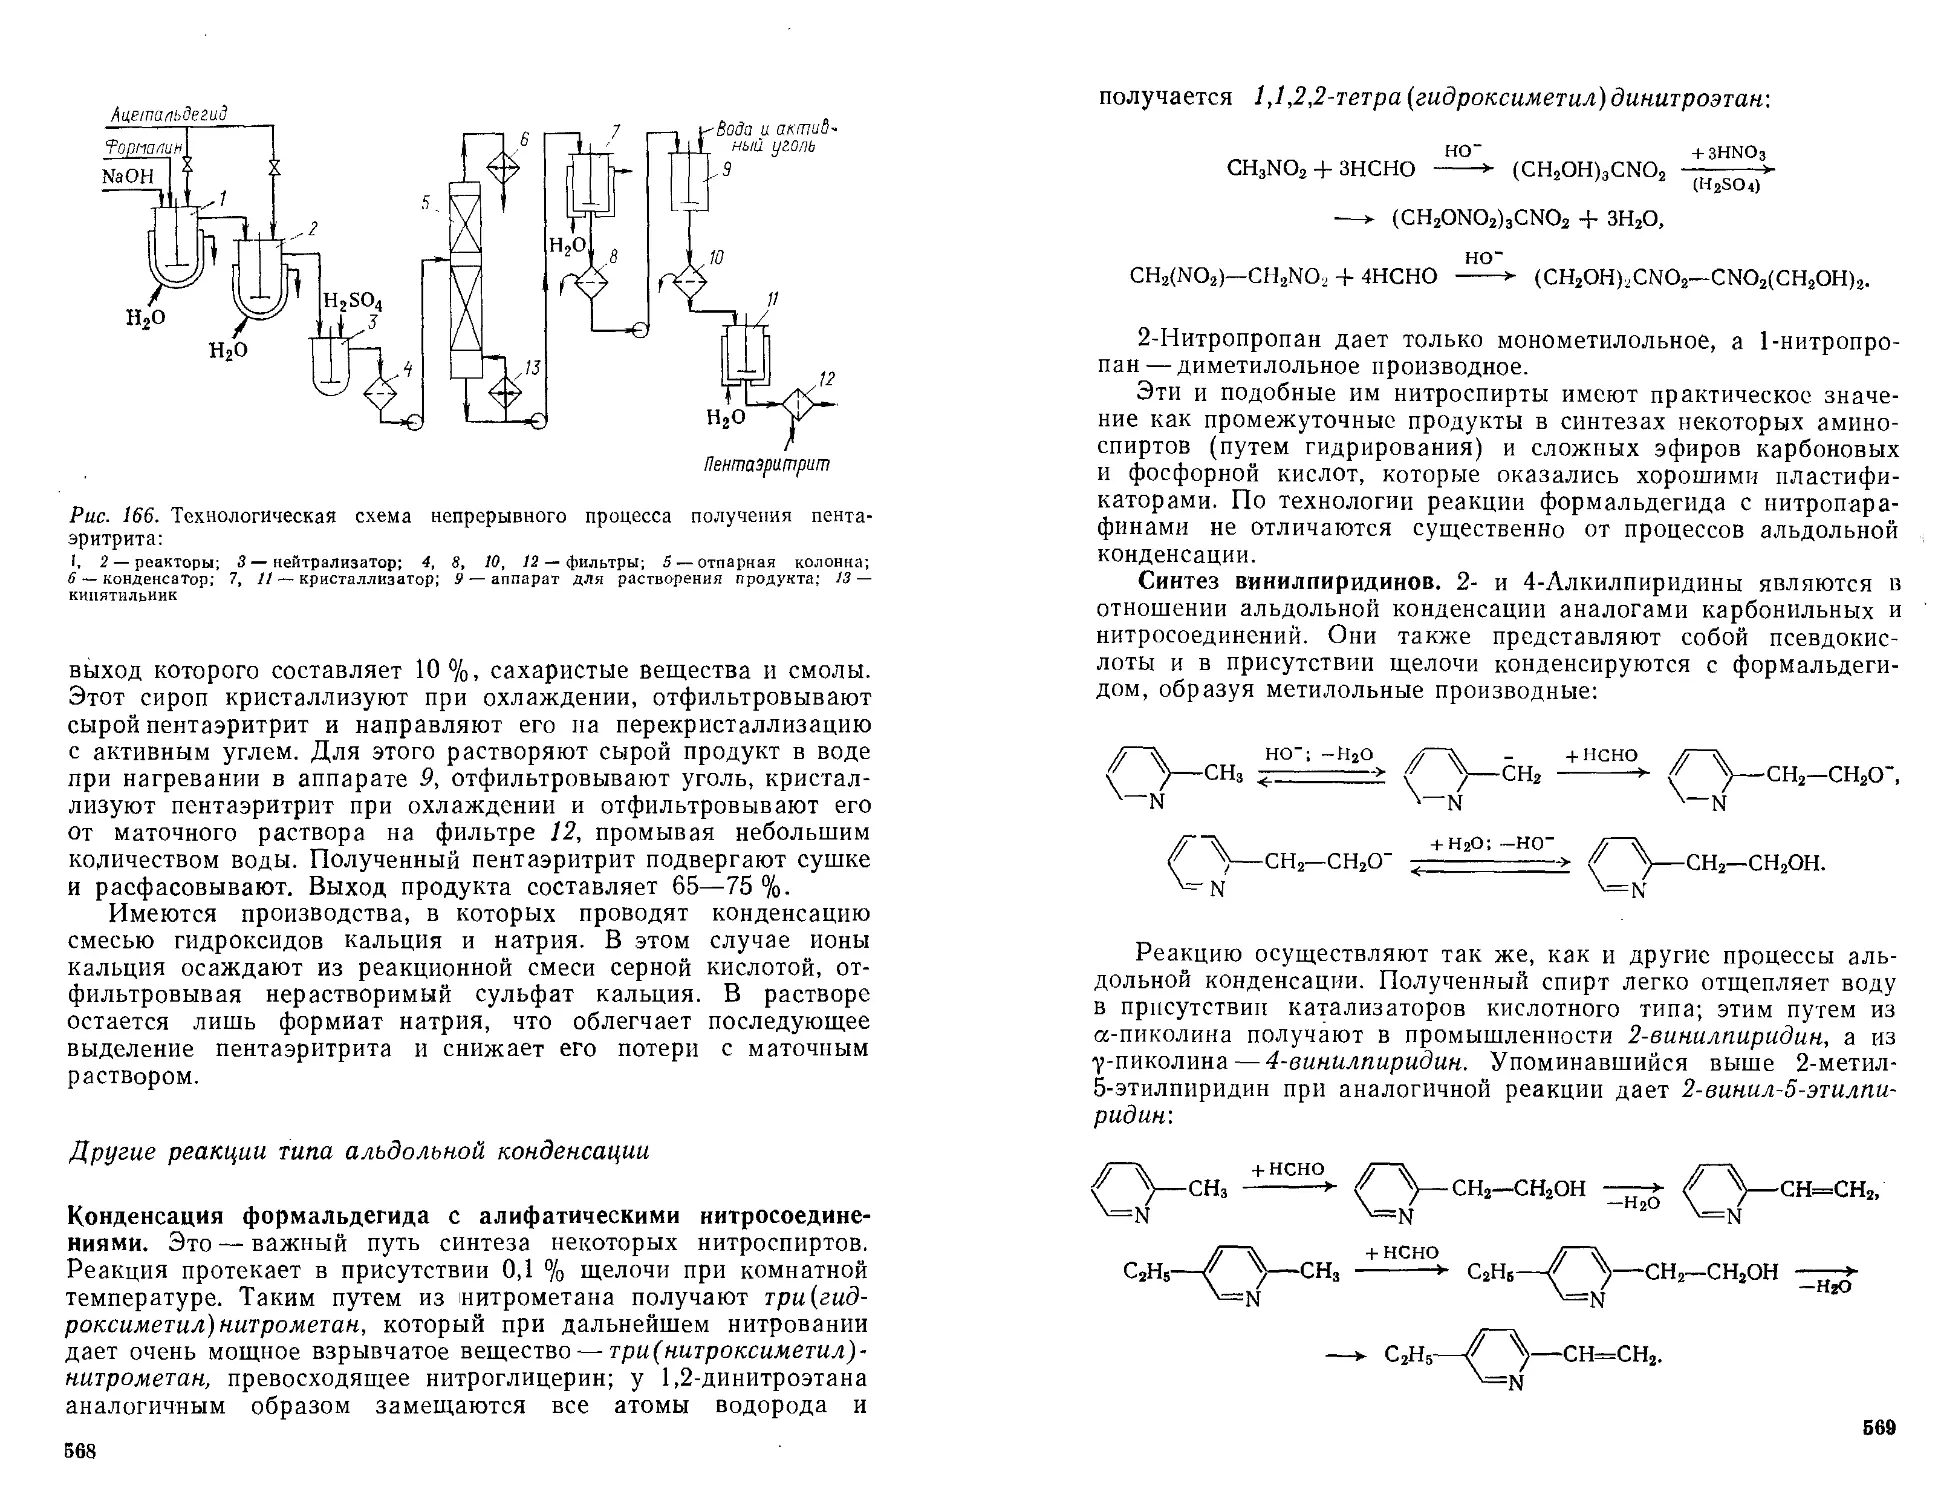 Другие реакции типа альдольной конденсации
Синтез винилпирйдинов